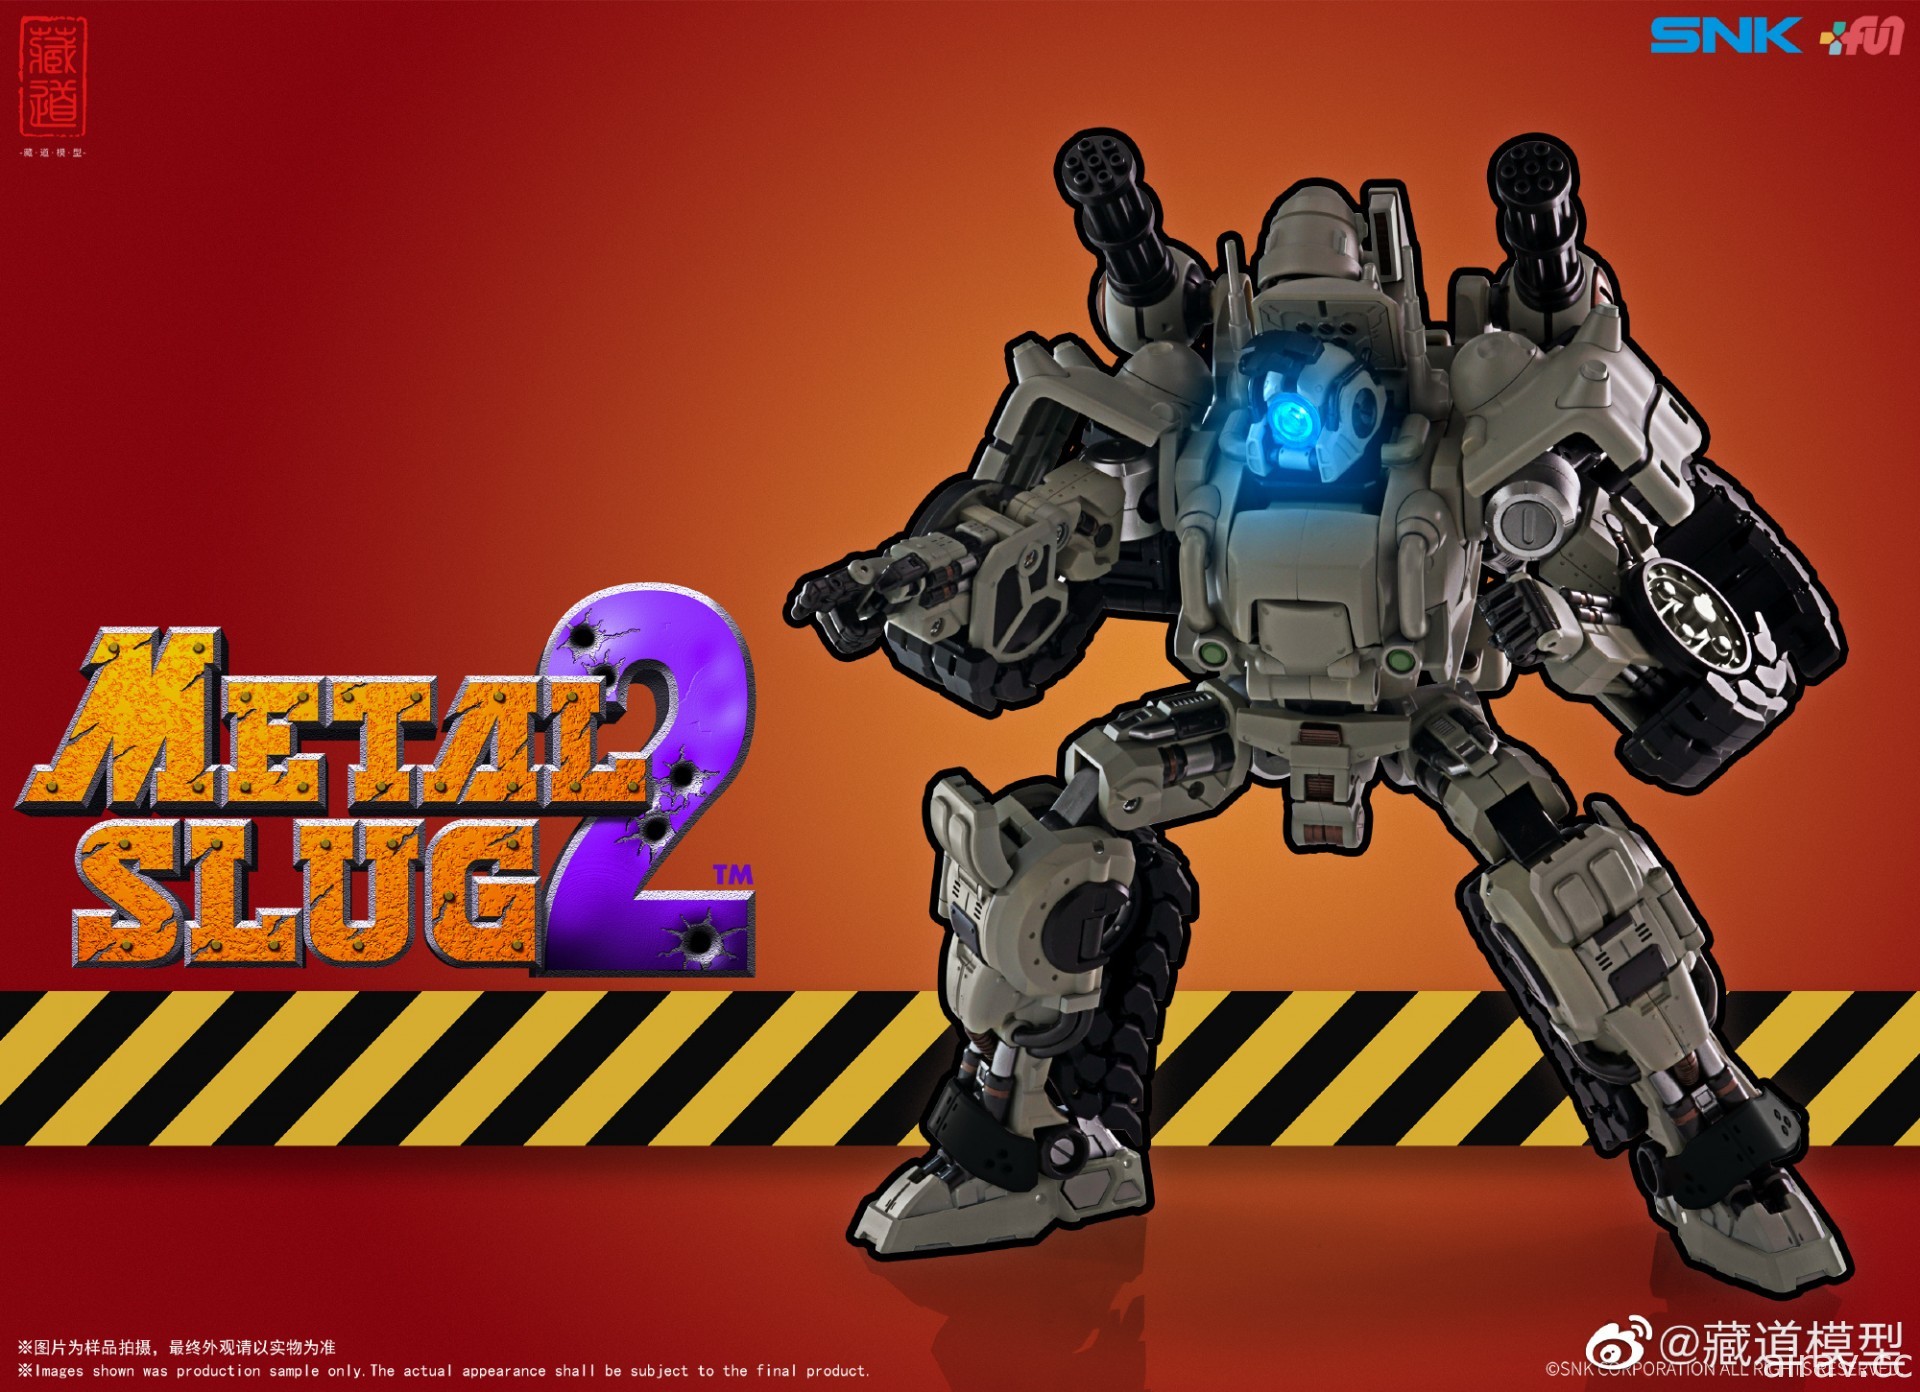 藏道模型推出 SNK 官方授權《Metal Slug》Q 版戰車變形機器人玩具